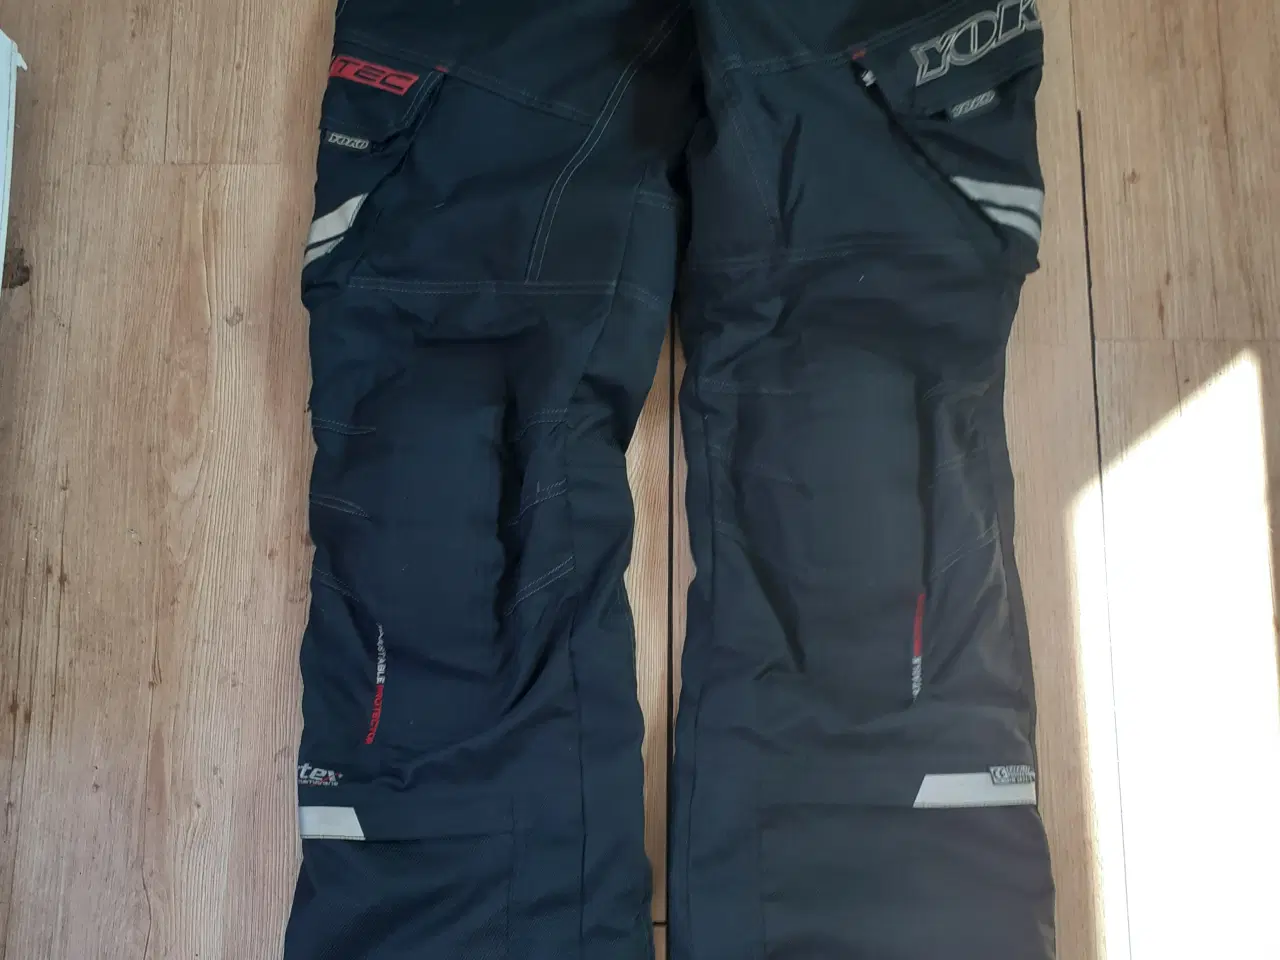 Billede 3 - MC bukser, jakker, støvler mm udstyr til 2 persone